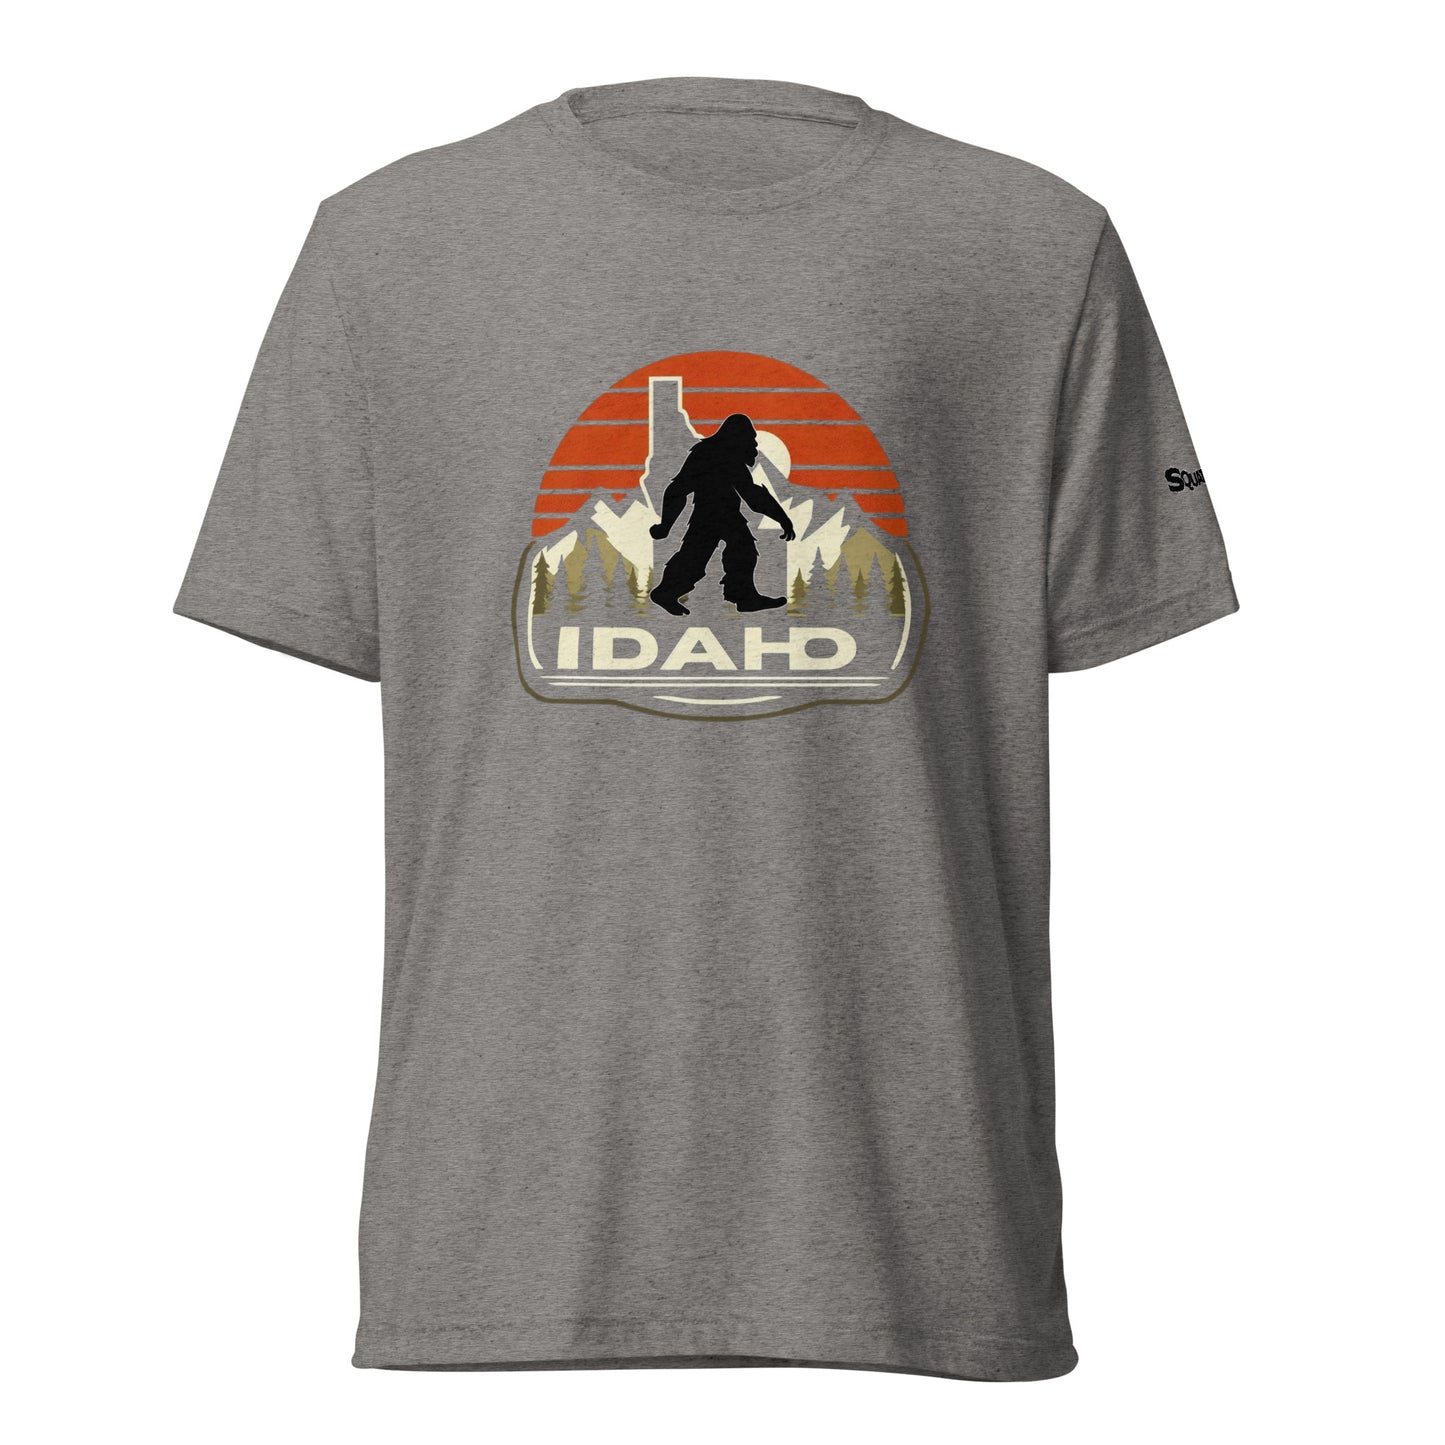 Idaho Squatchnut Short sleeve t-shirt